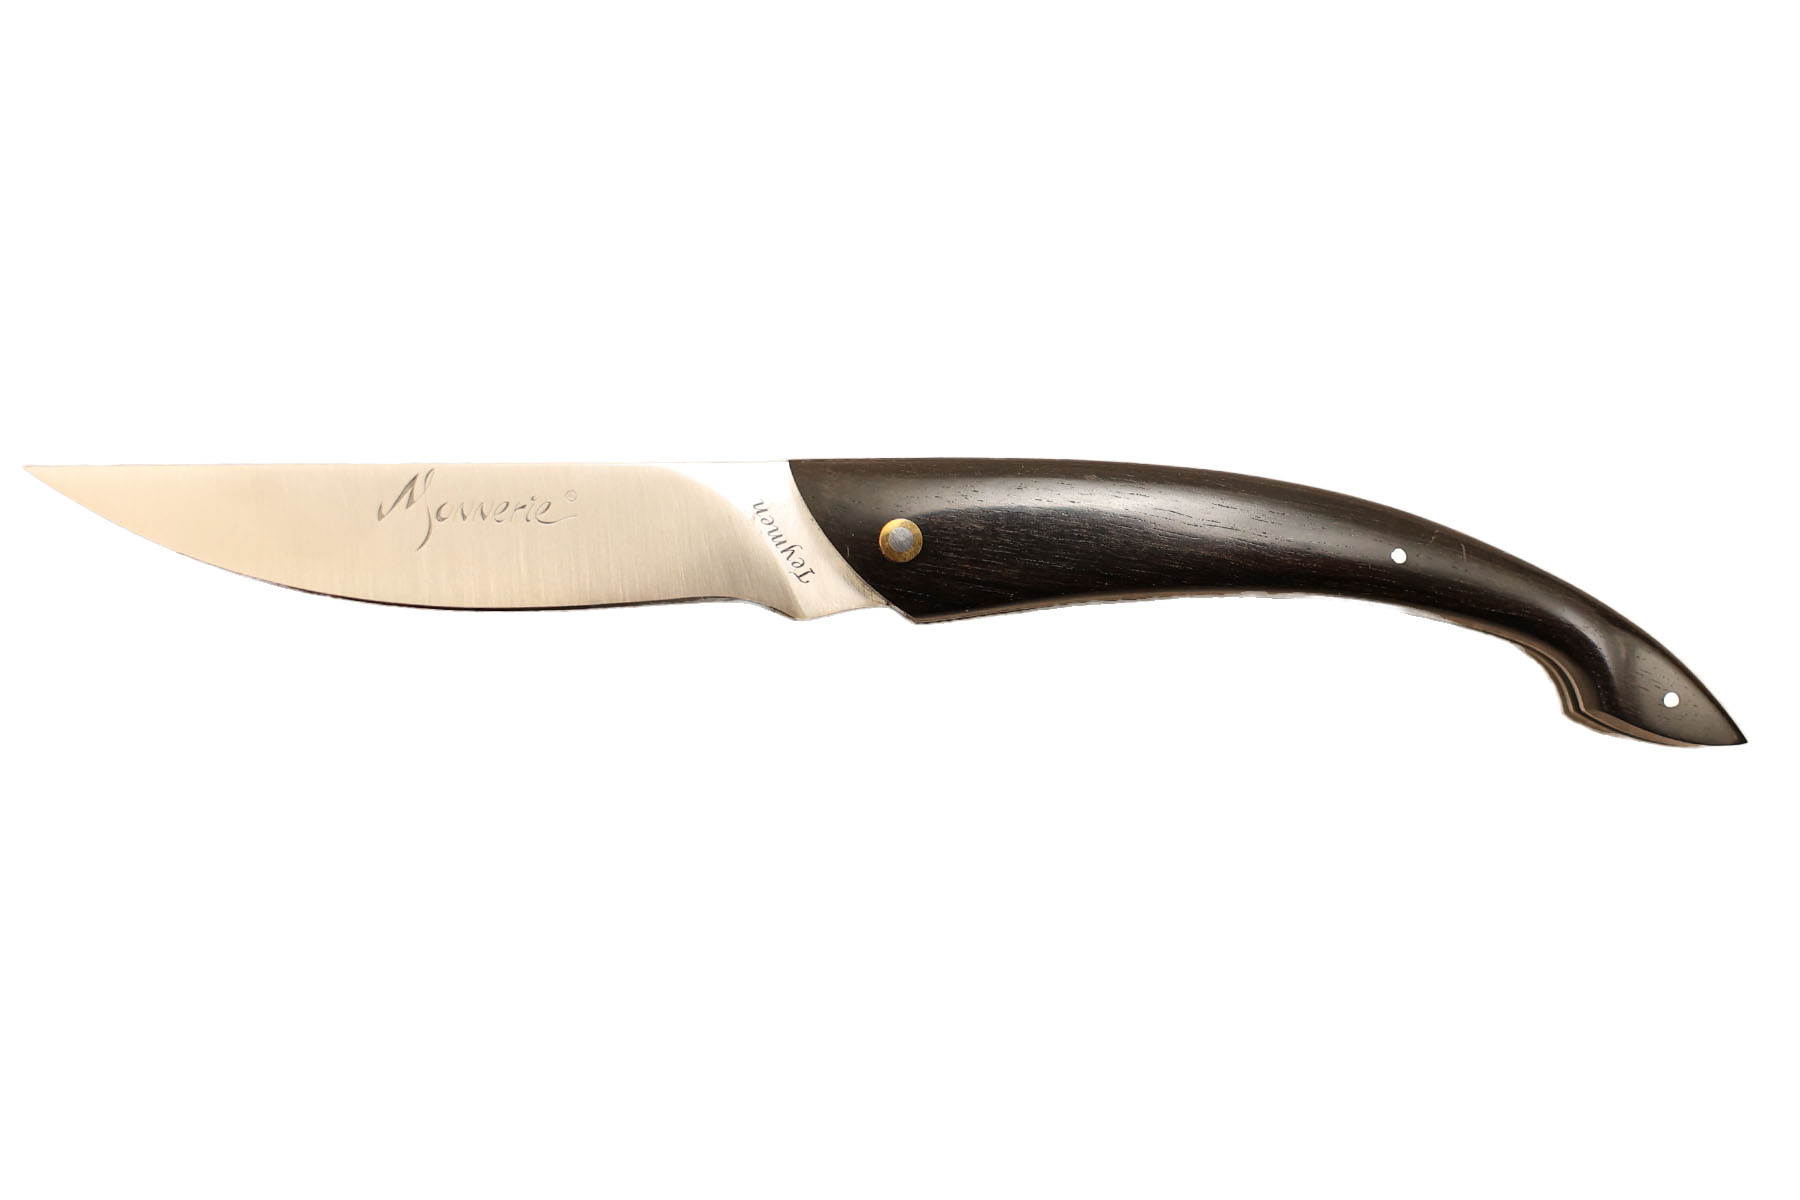 Couteau pliant artisanal modèle Monnerie de la coutellerie Teymen - ébène